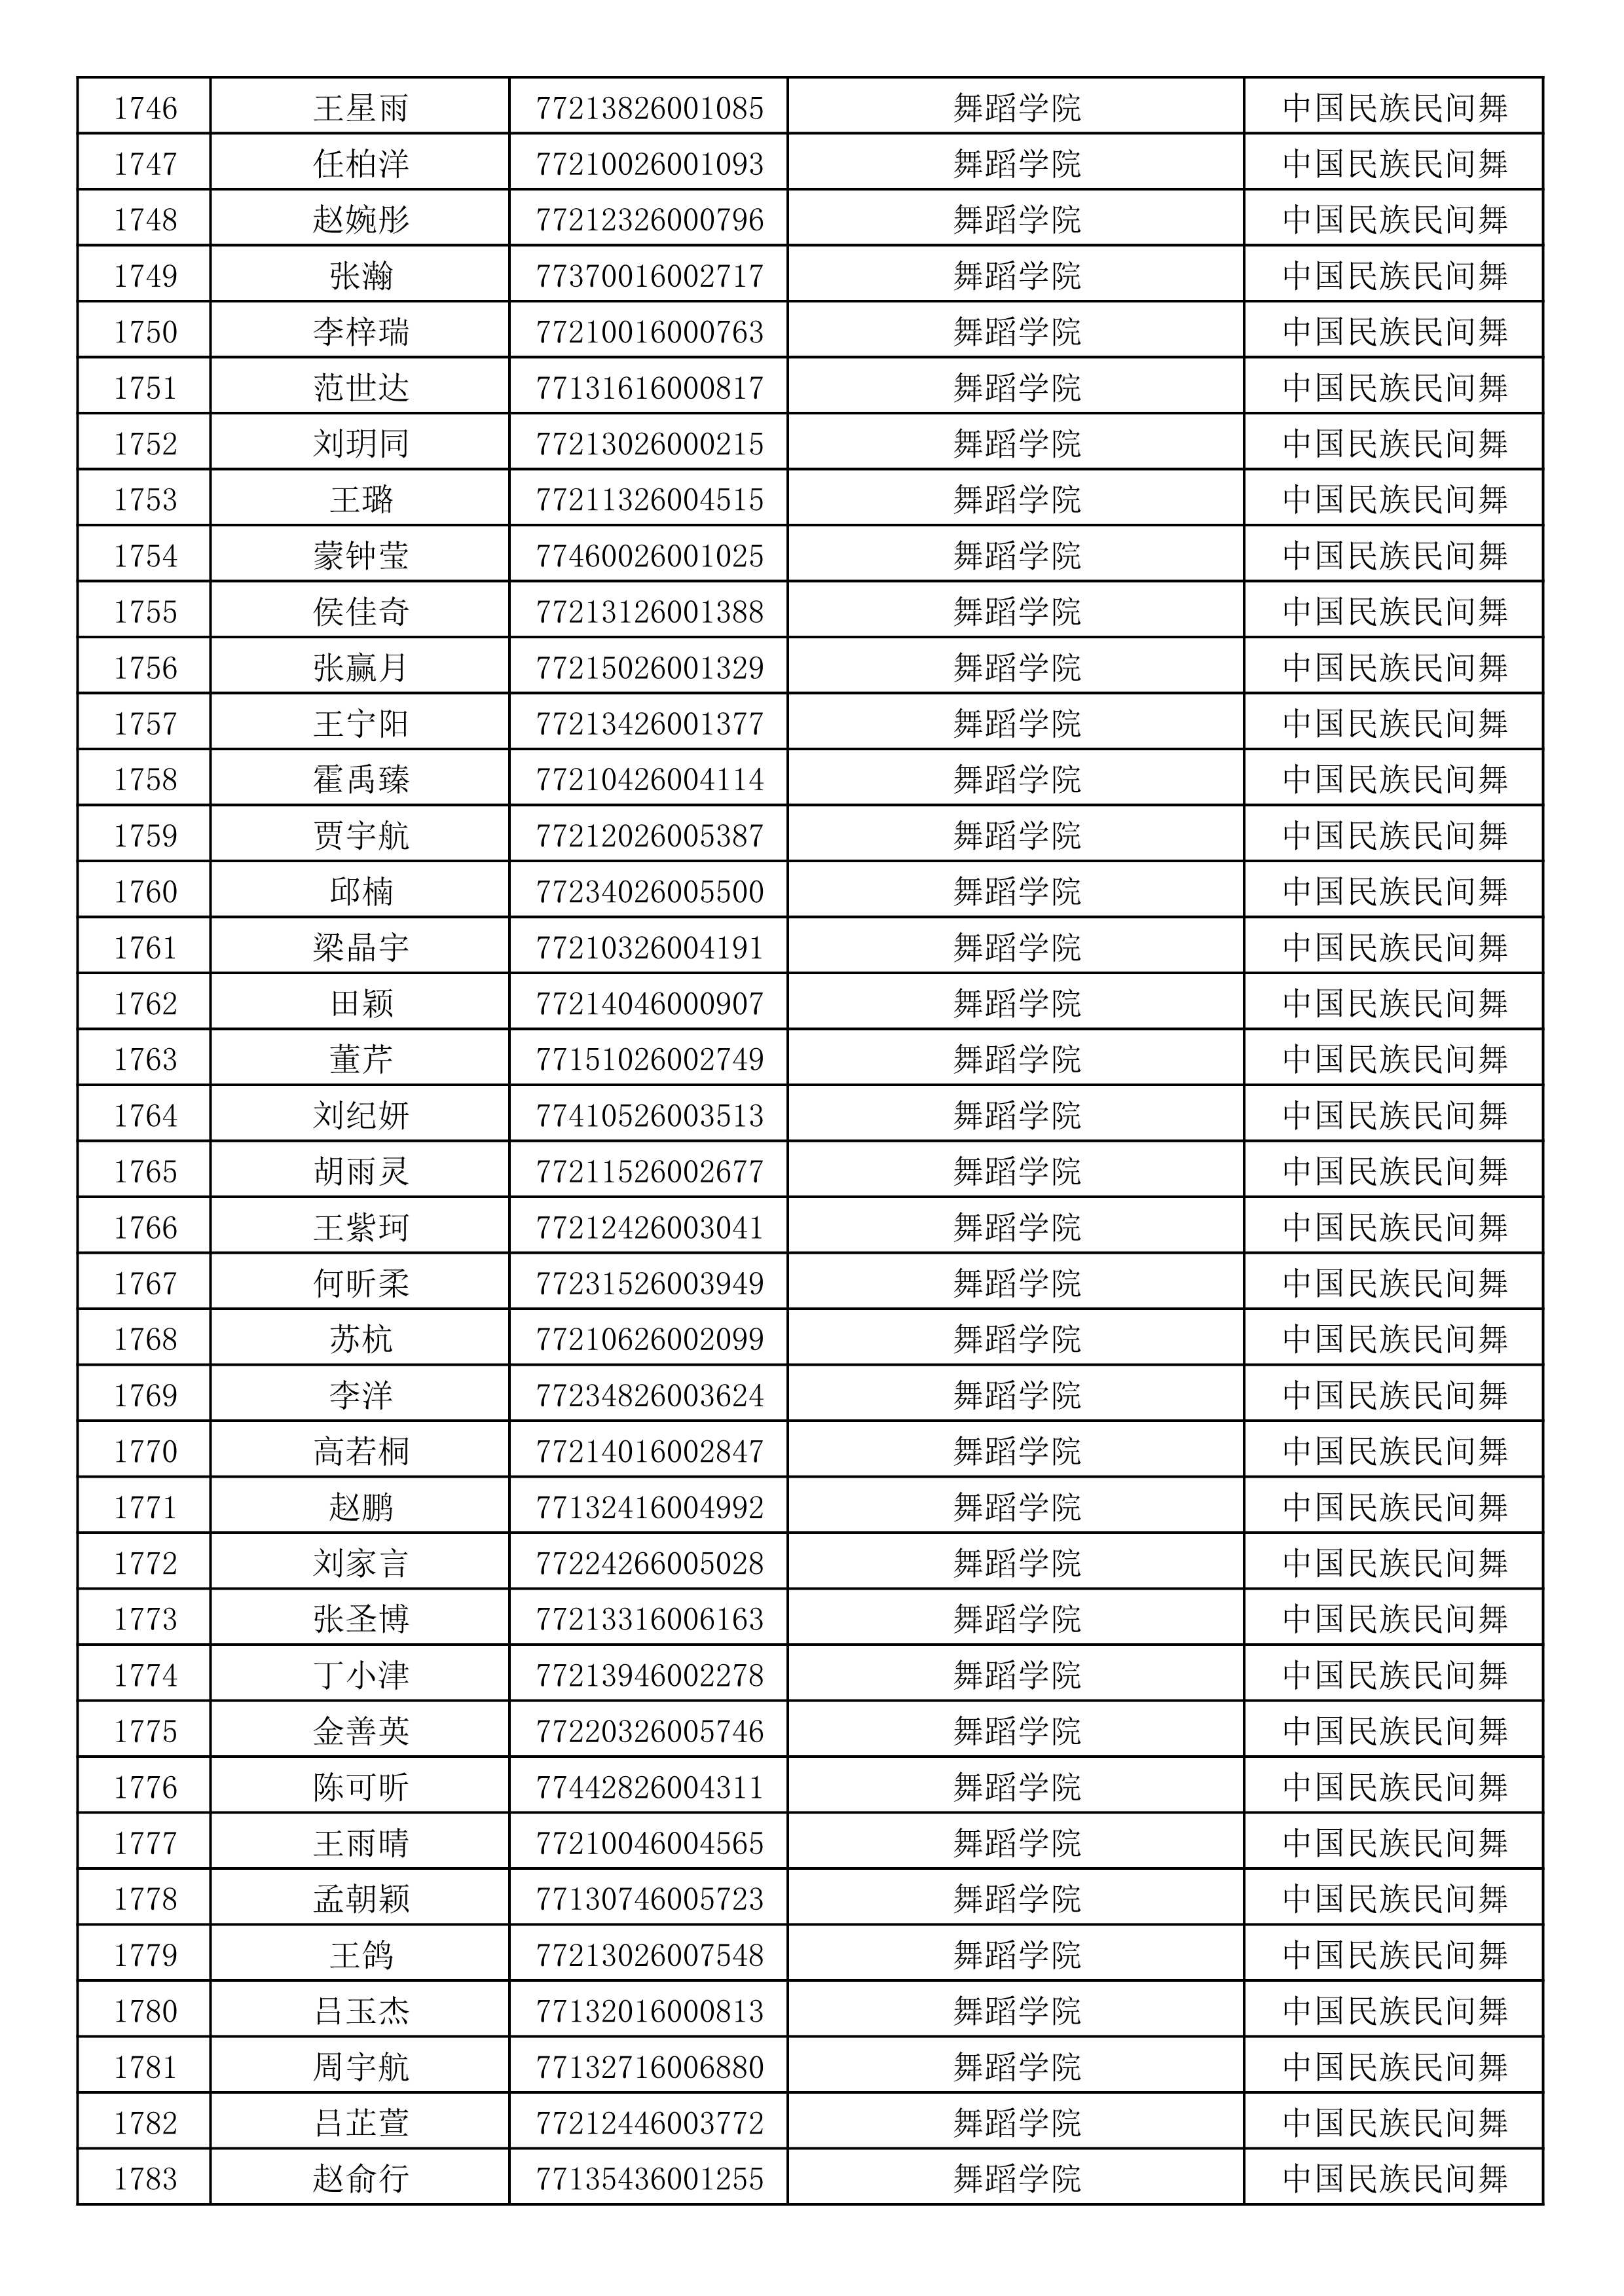 沈阳音乐学院2019年本科招生考试初试合格名单_47.jpg